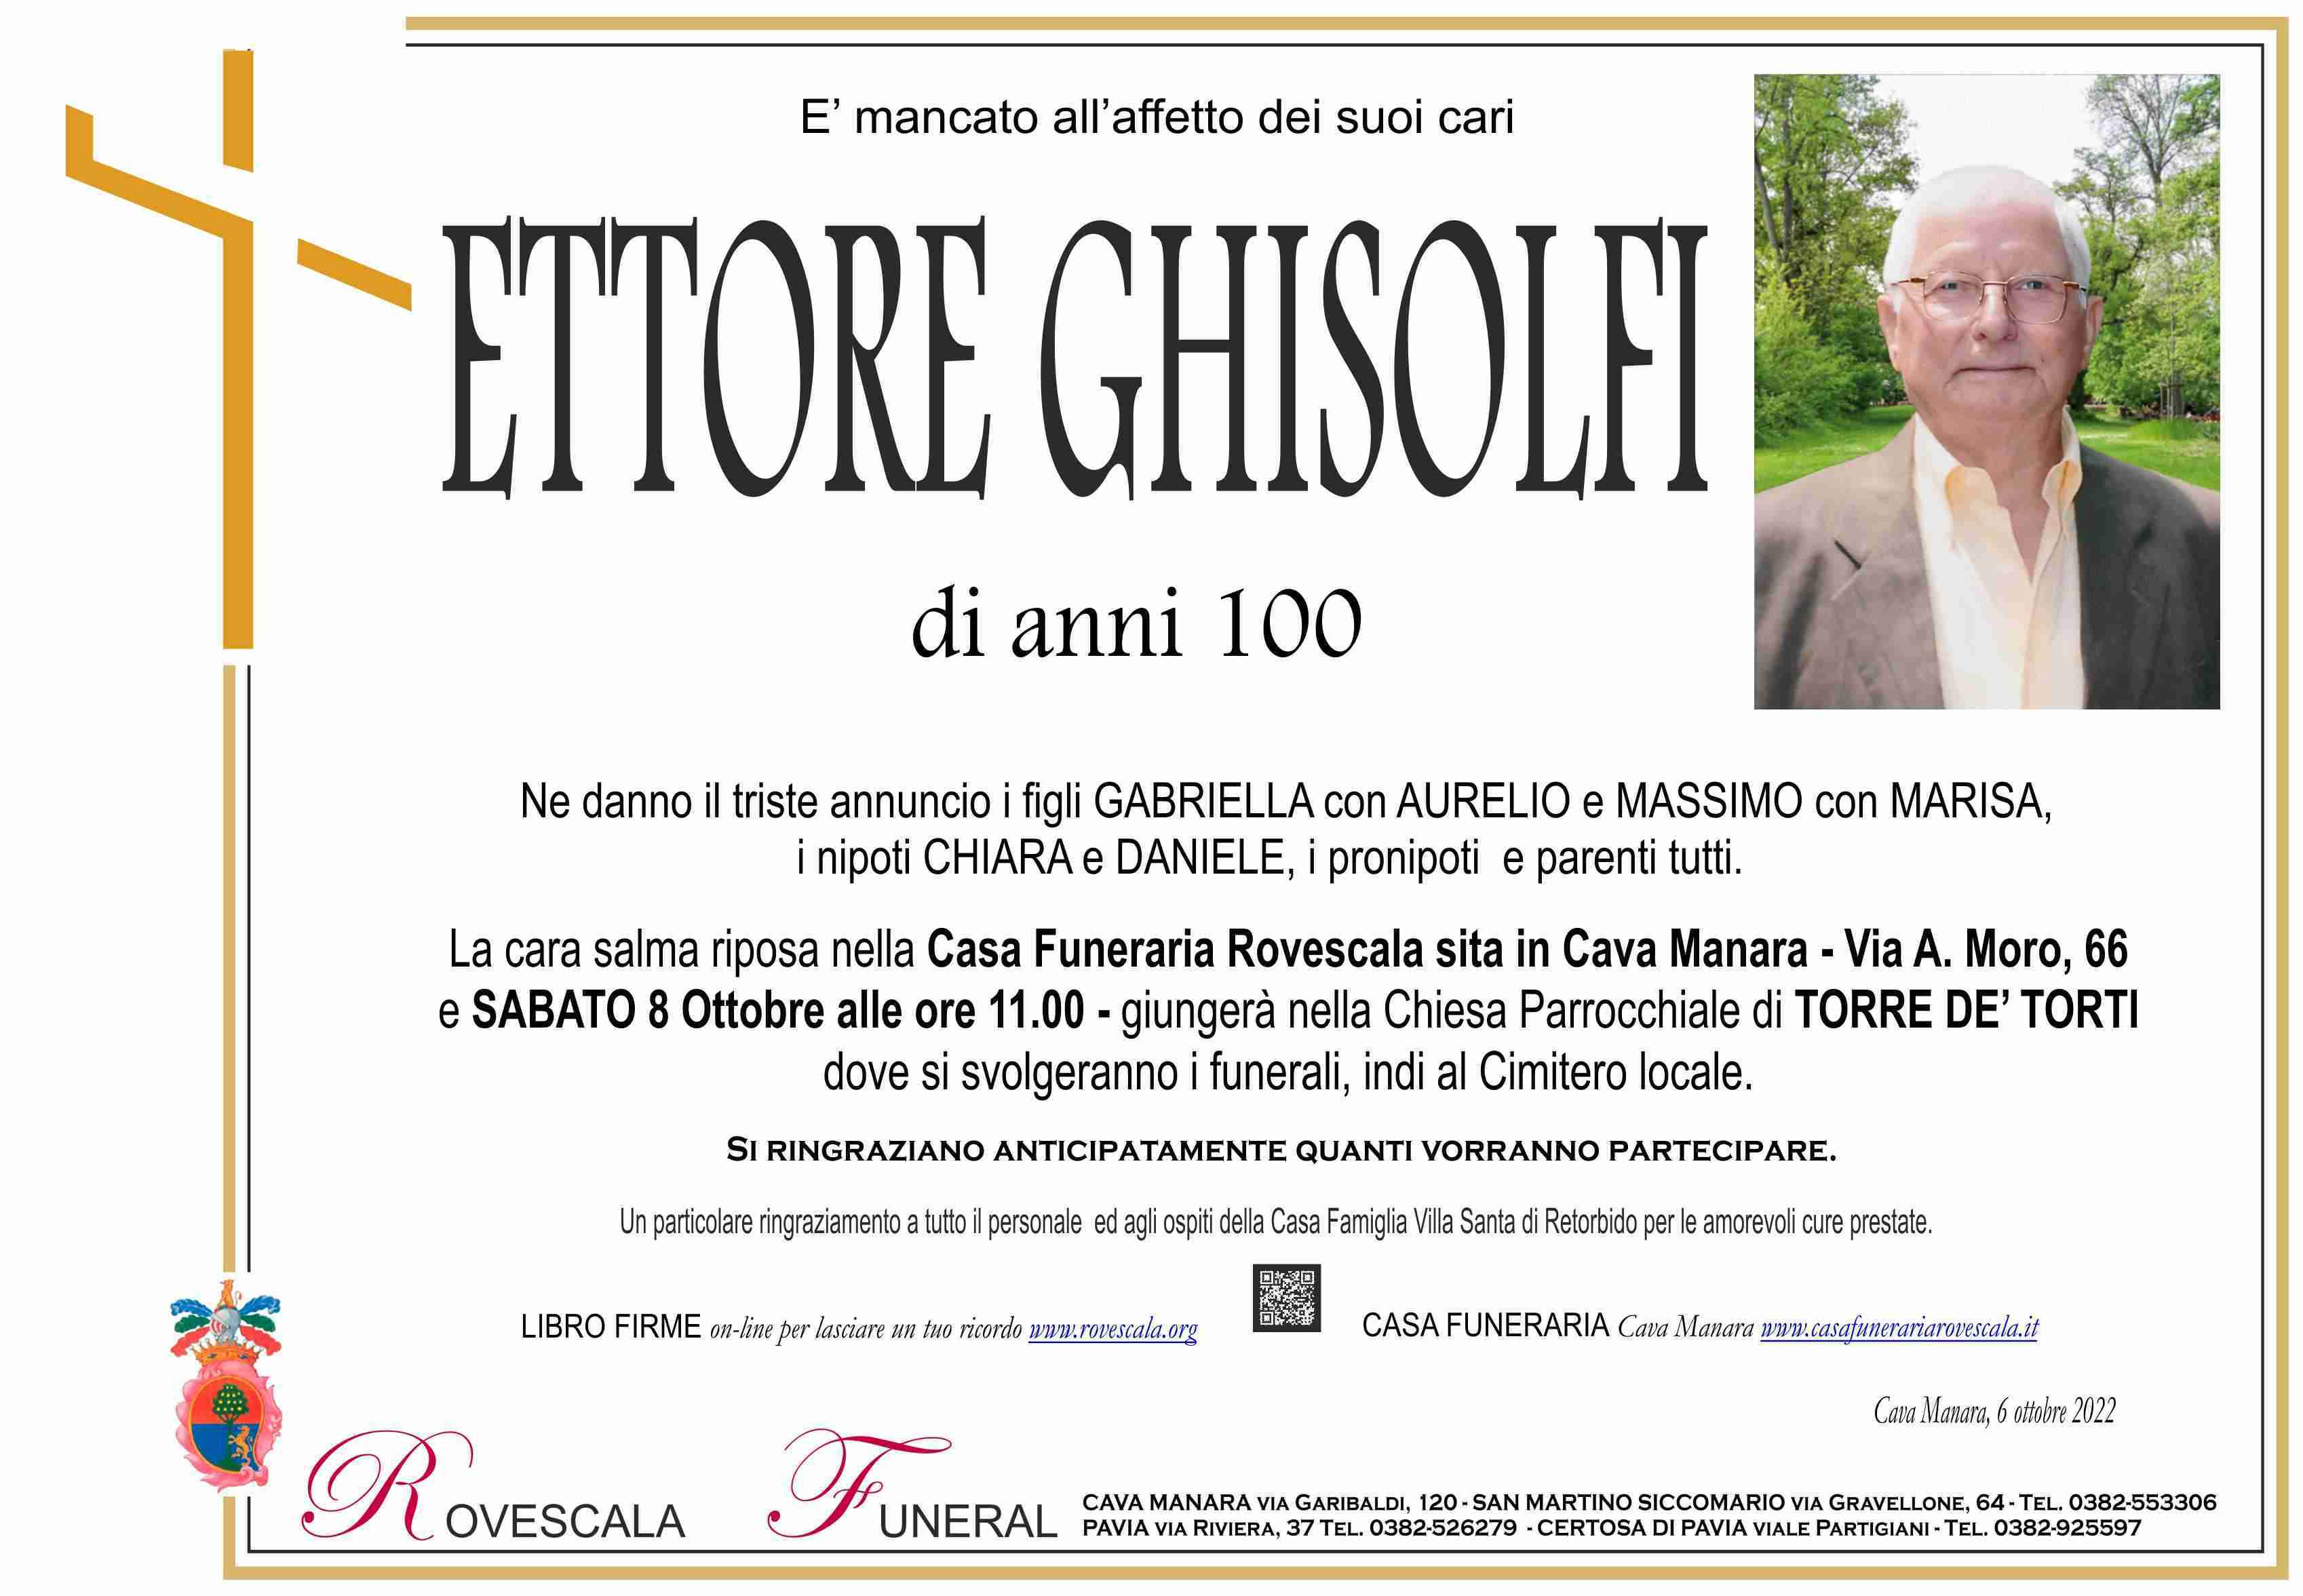 Ettore Ghisolfi